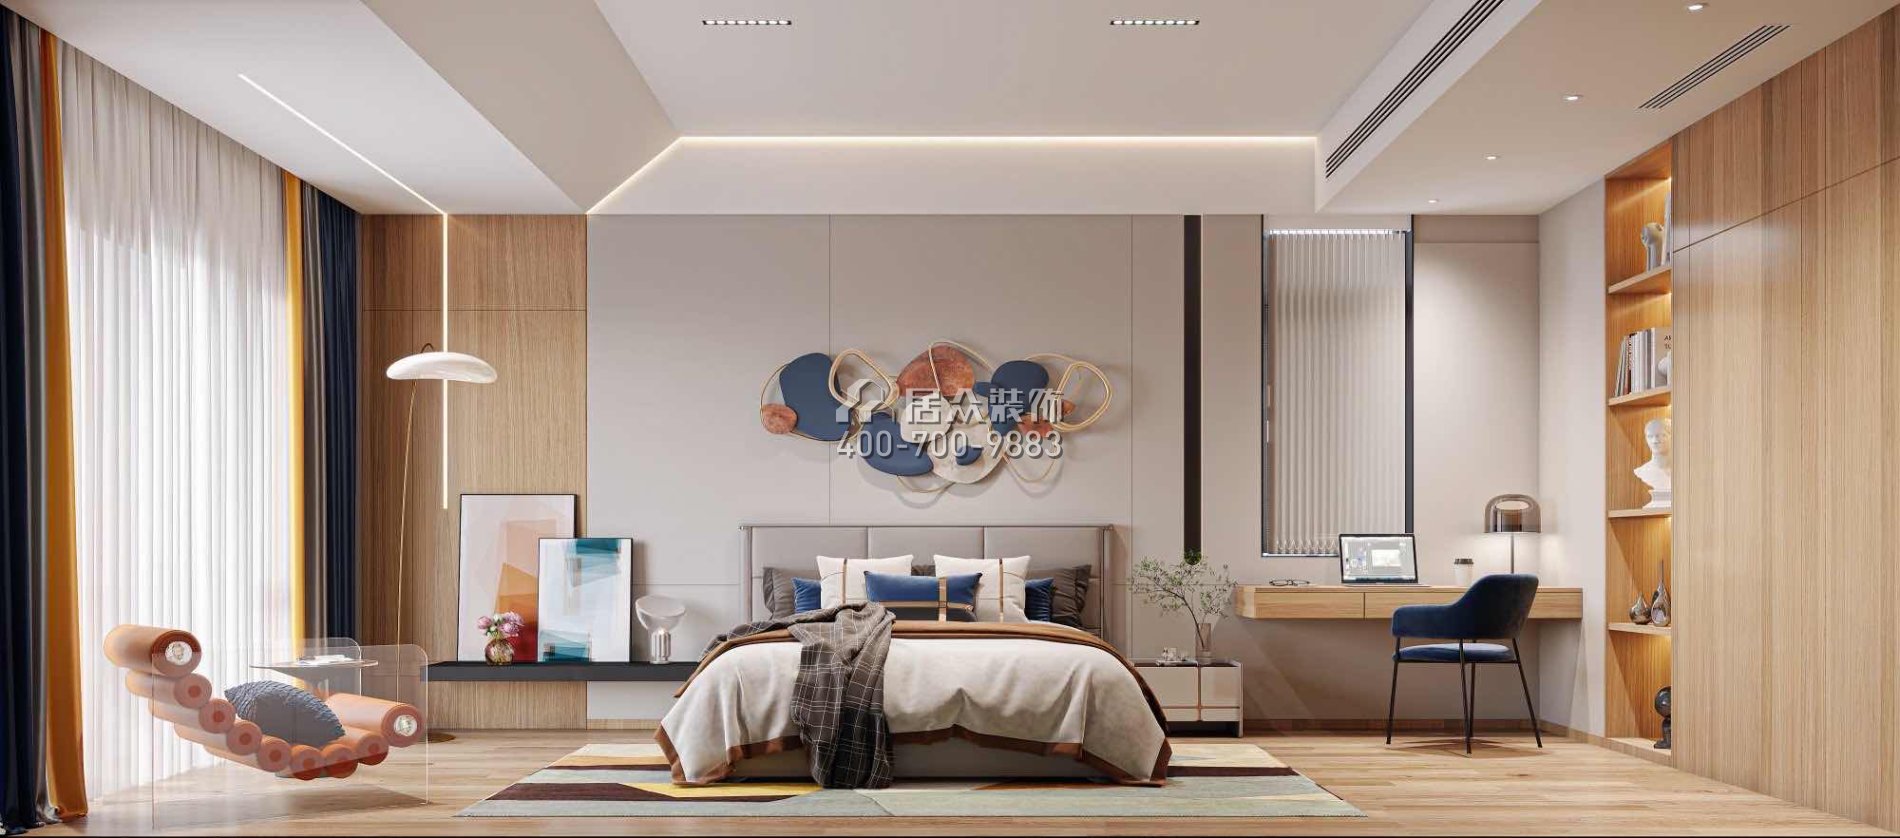 翠湖香山480平方米現代簡約風格別墅戶型臥室裝修效果圖